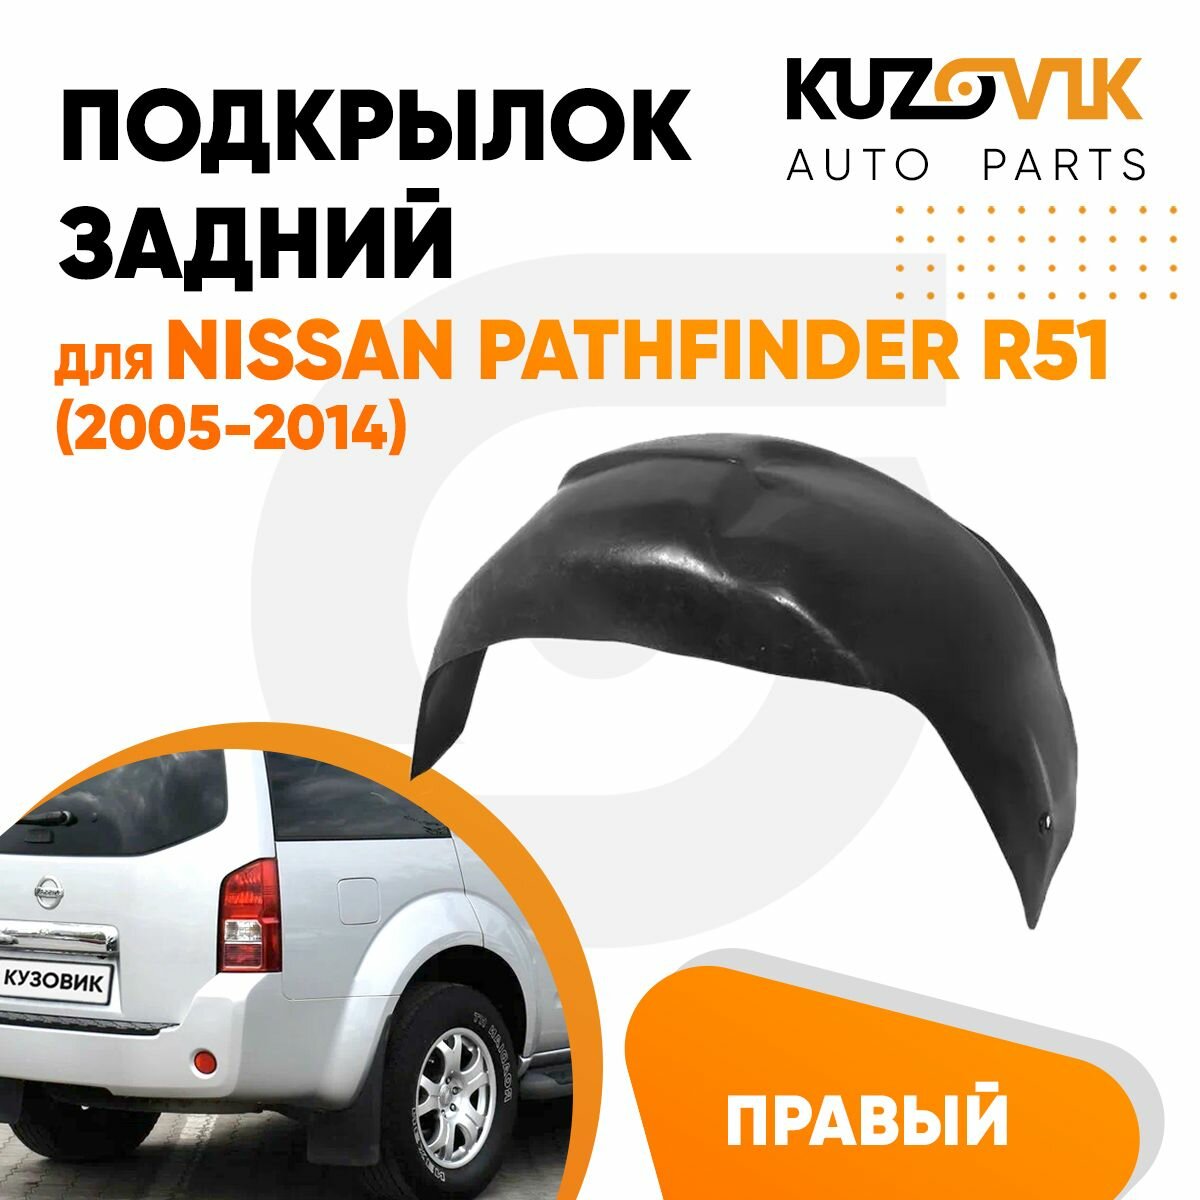 Подкрылок задний правый для Ниссан Патфайндер Nissan Pathfinder R51 (2005-2014)